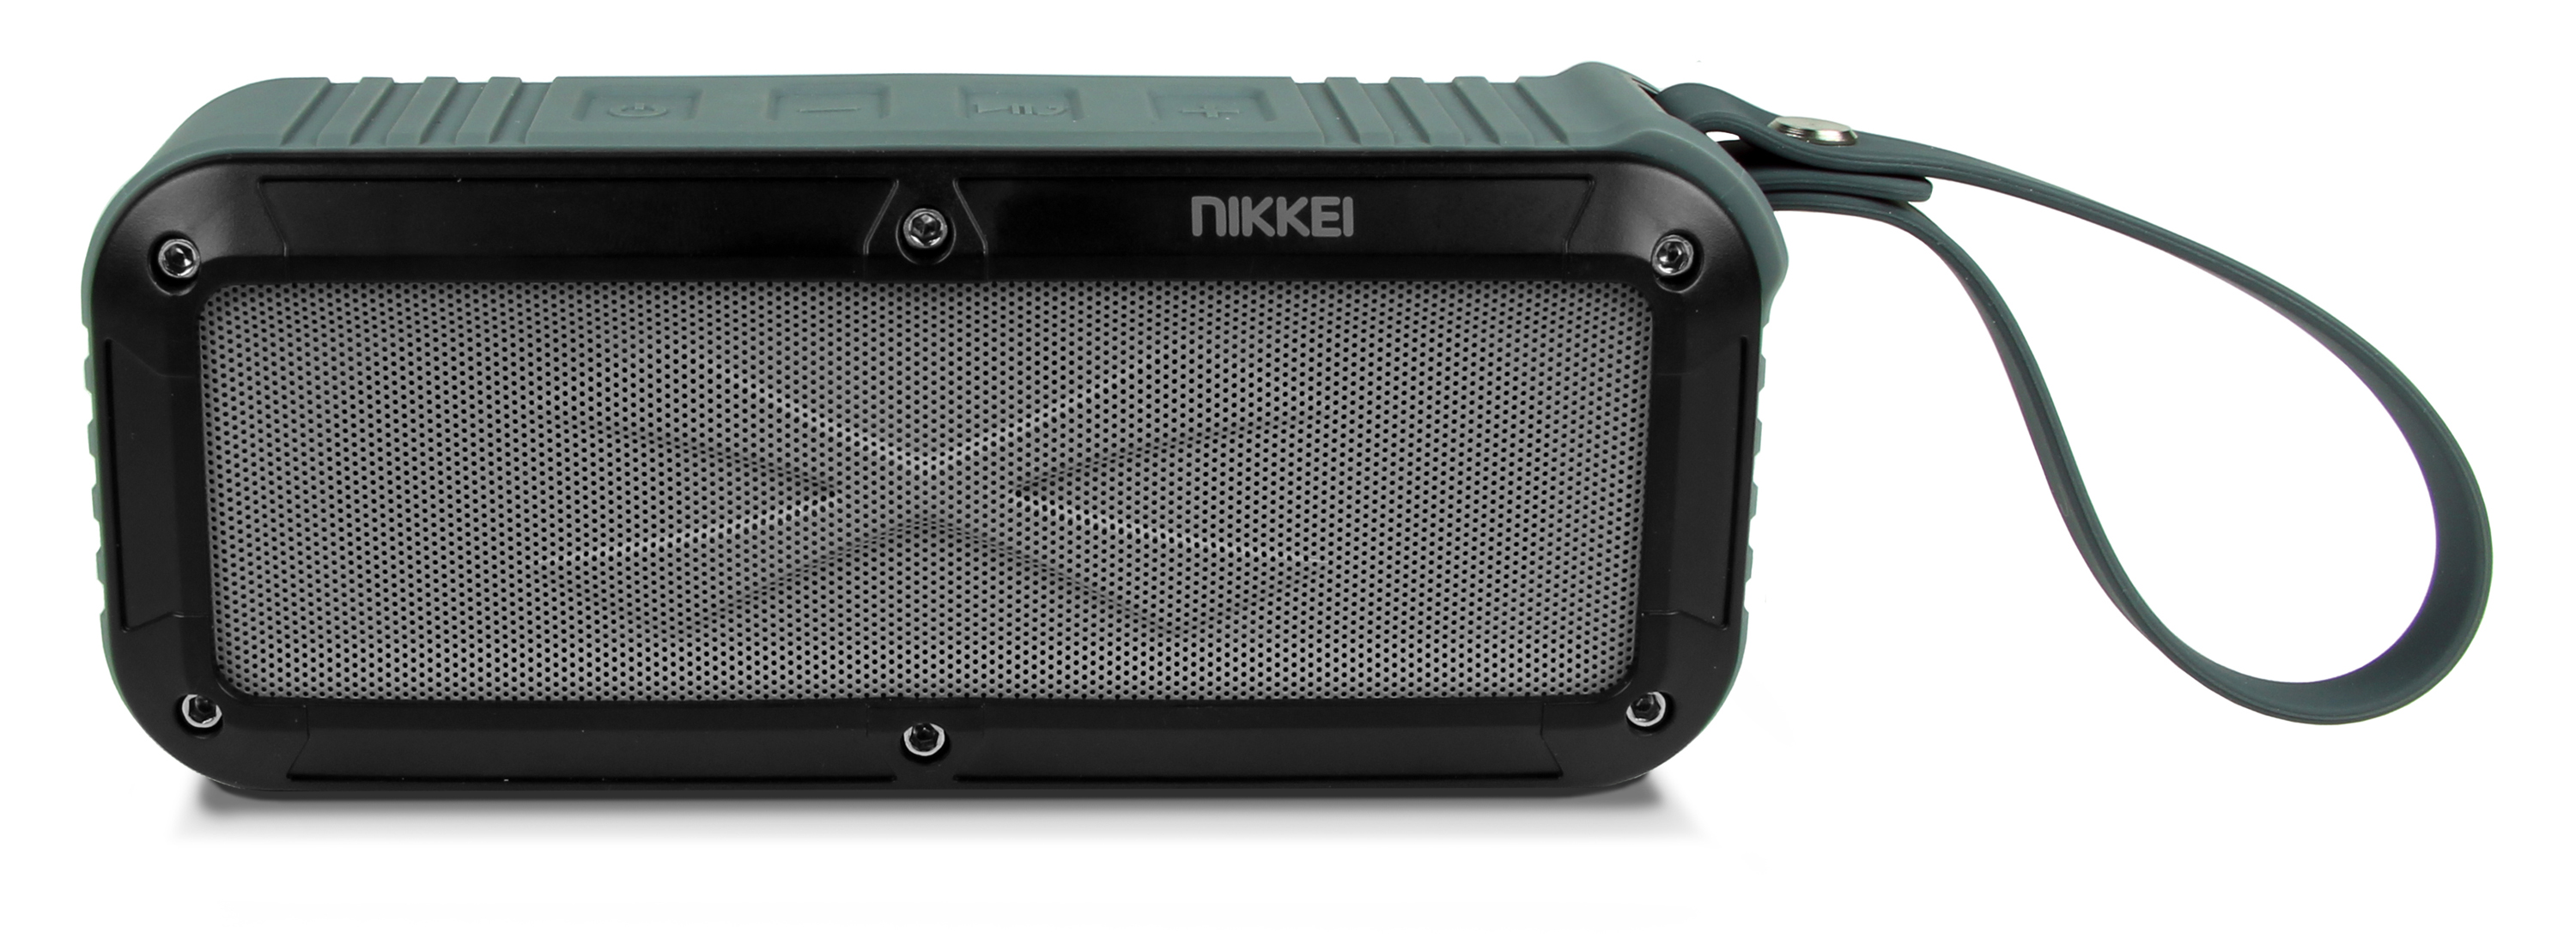 Nikkei BOXX3GY Waterproof BT Speaker  2x3W grijs